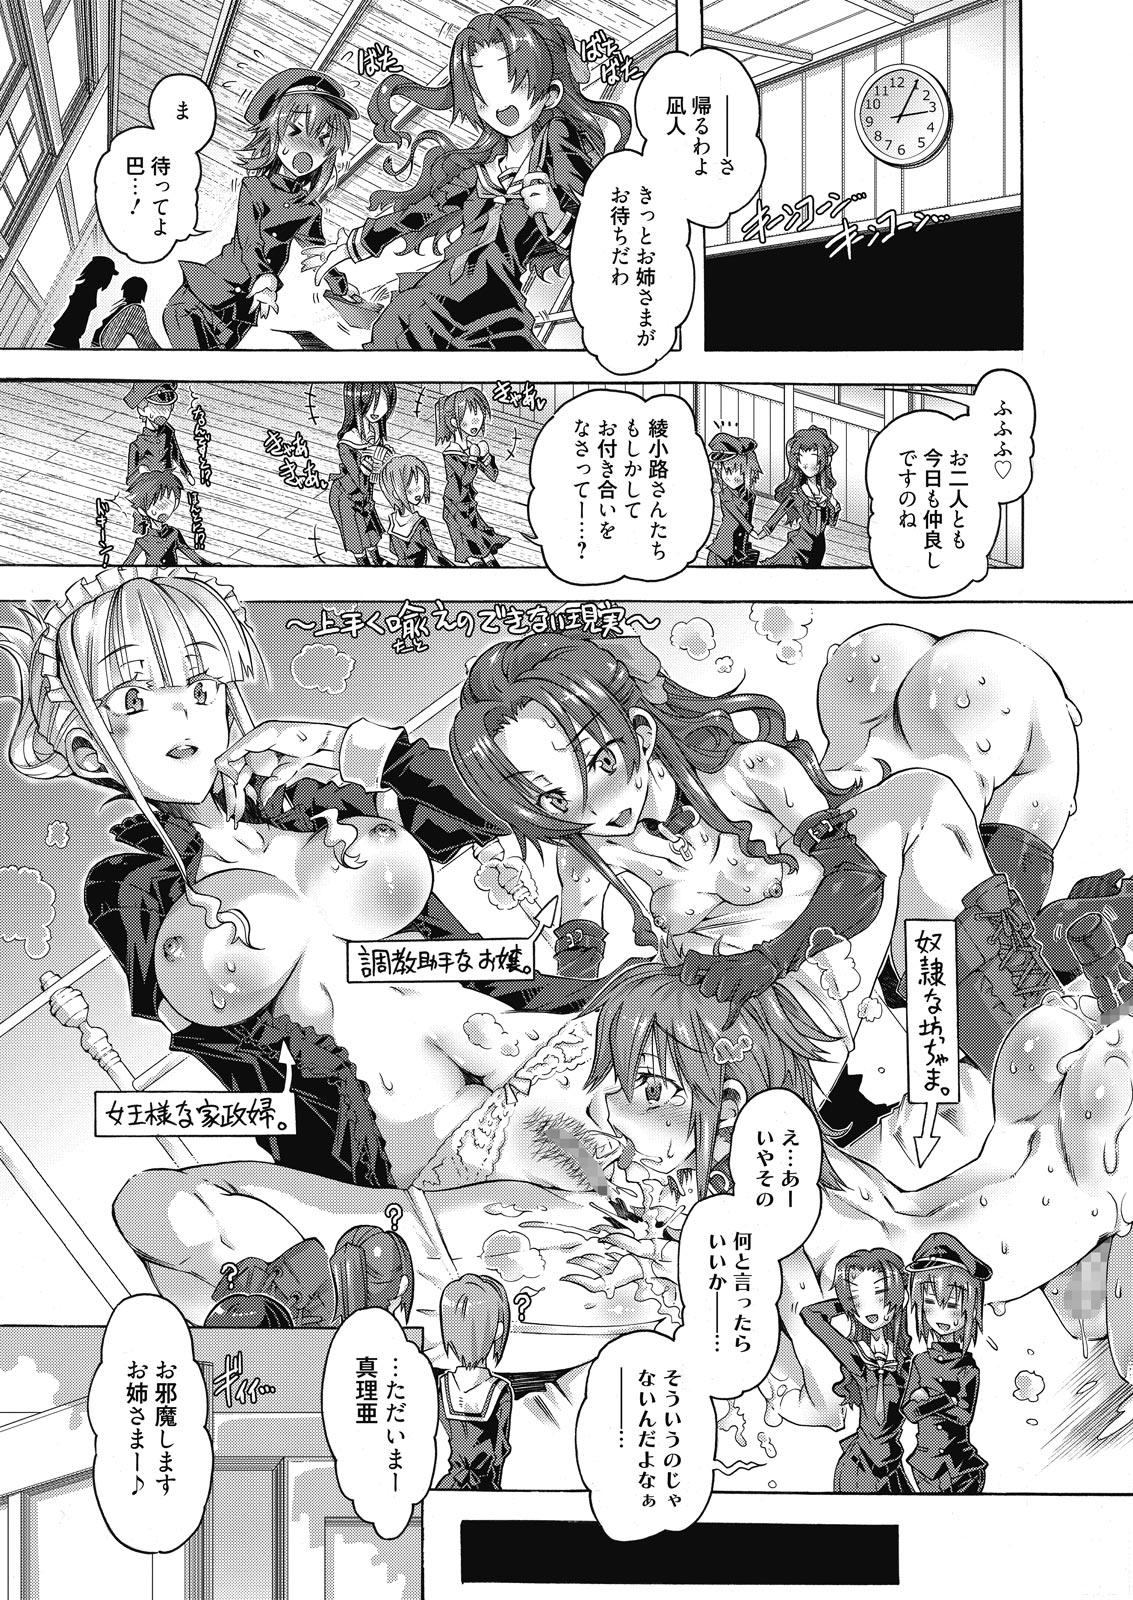 Suruba Web Manga Bangaichi Vol. 10 Blow - Page 3